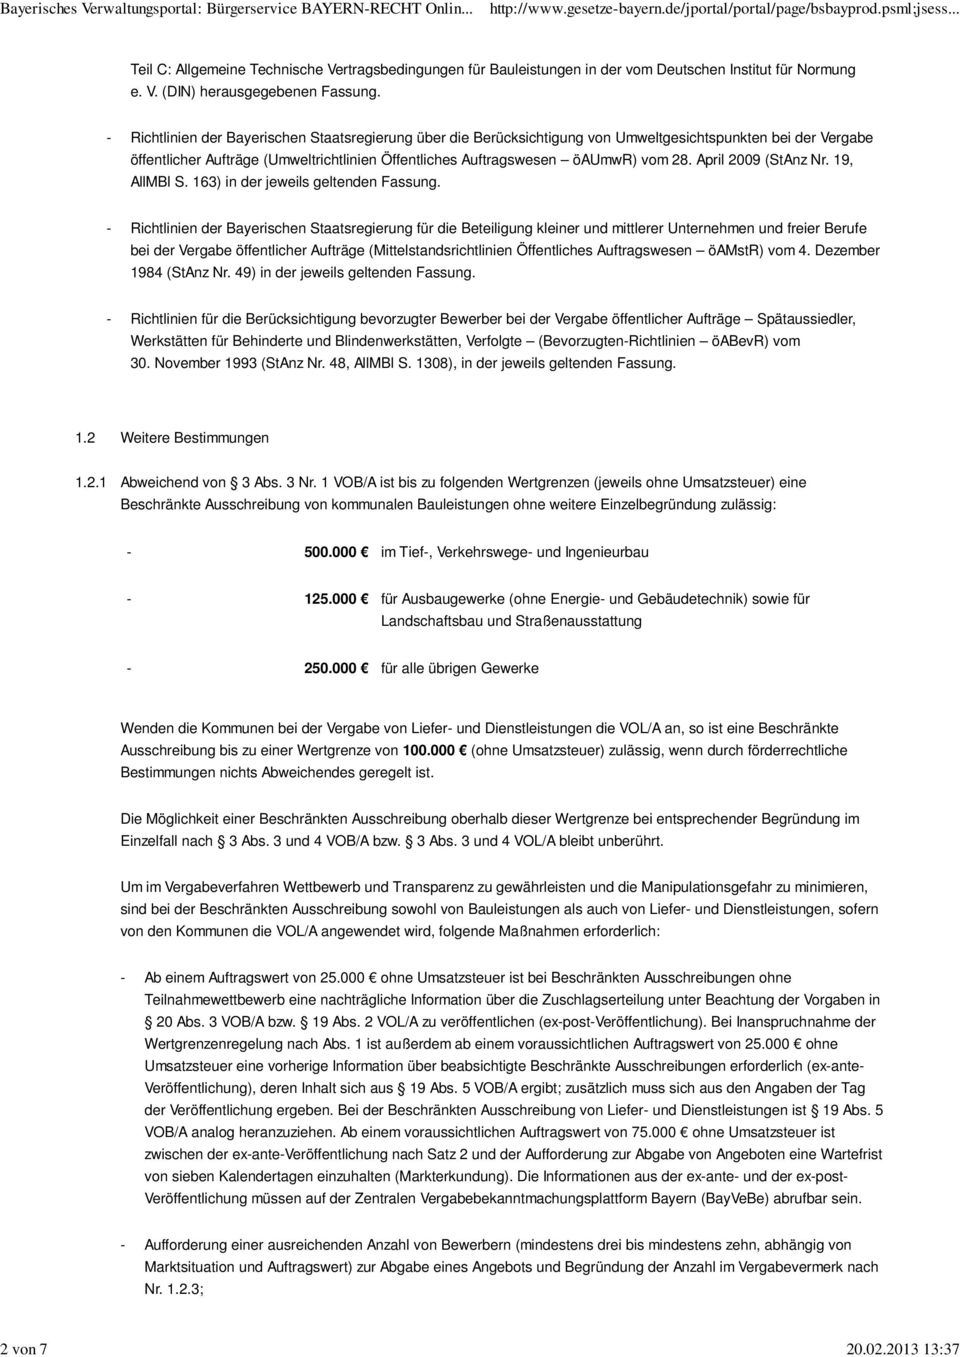 Richtlinien der Bayerischen Staatsregierung über die Berücksichtigung von Umweltgesichtspunkten bei der Vergabe öffentlicher Aufträge (Umweltrichtlinien Öffentliches Auftragswesen öaumwr) vom 28.